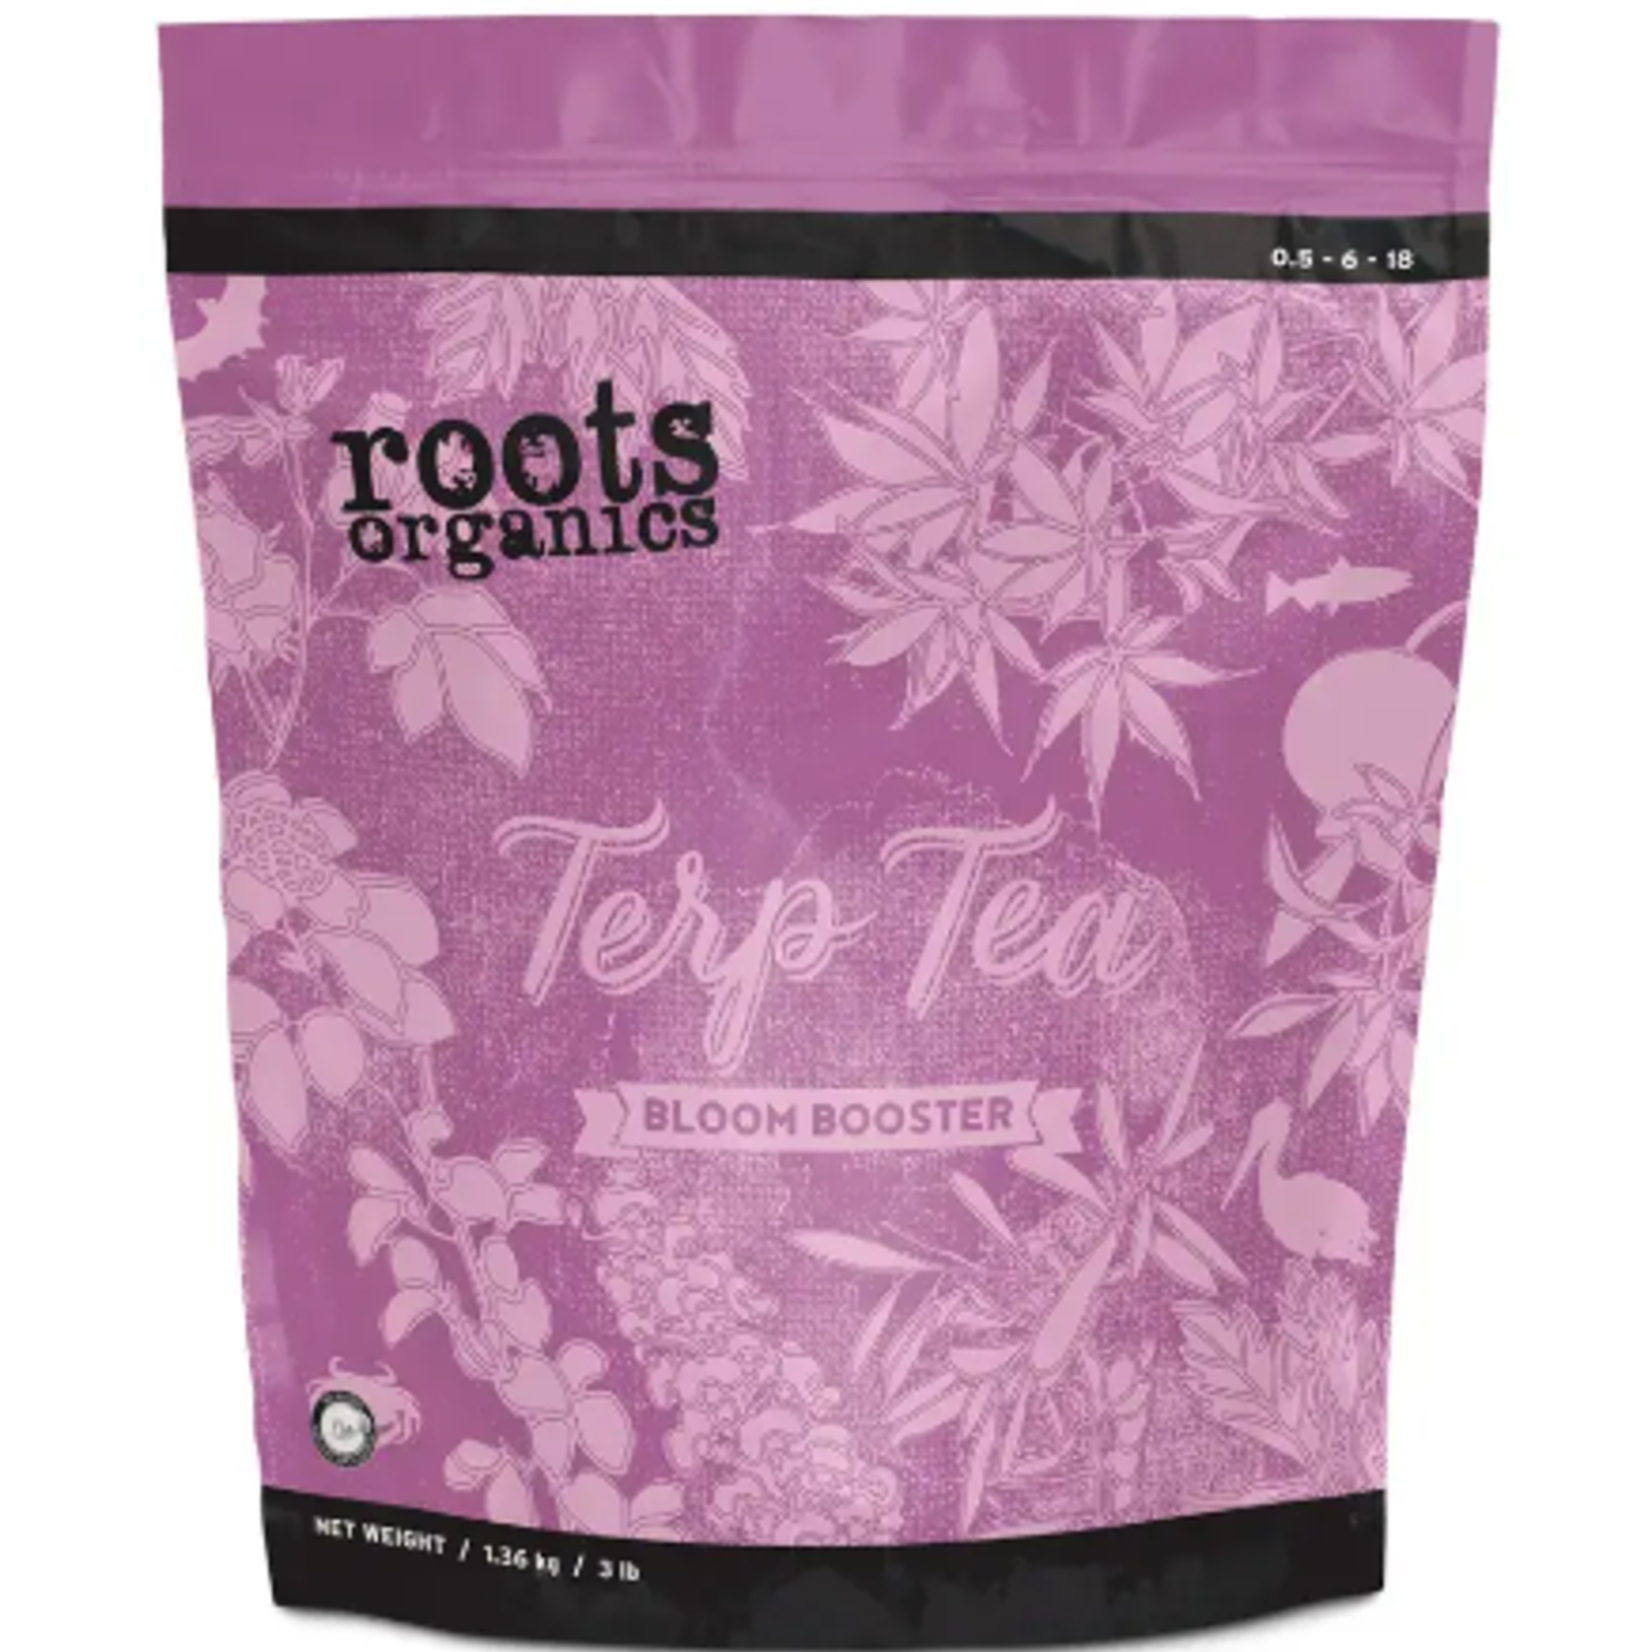 Roots Organic Roots Organics Terp Tea Bloom Booster 3lb